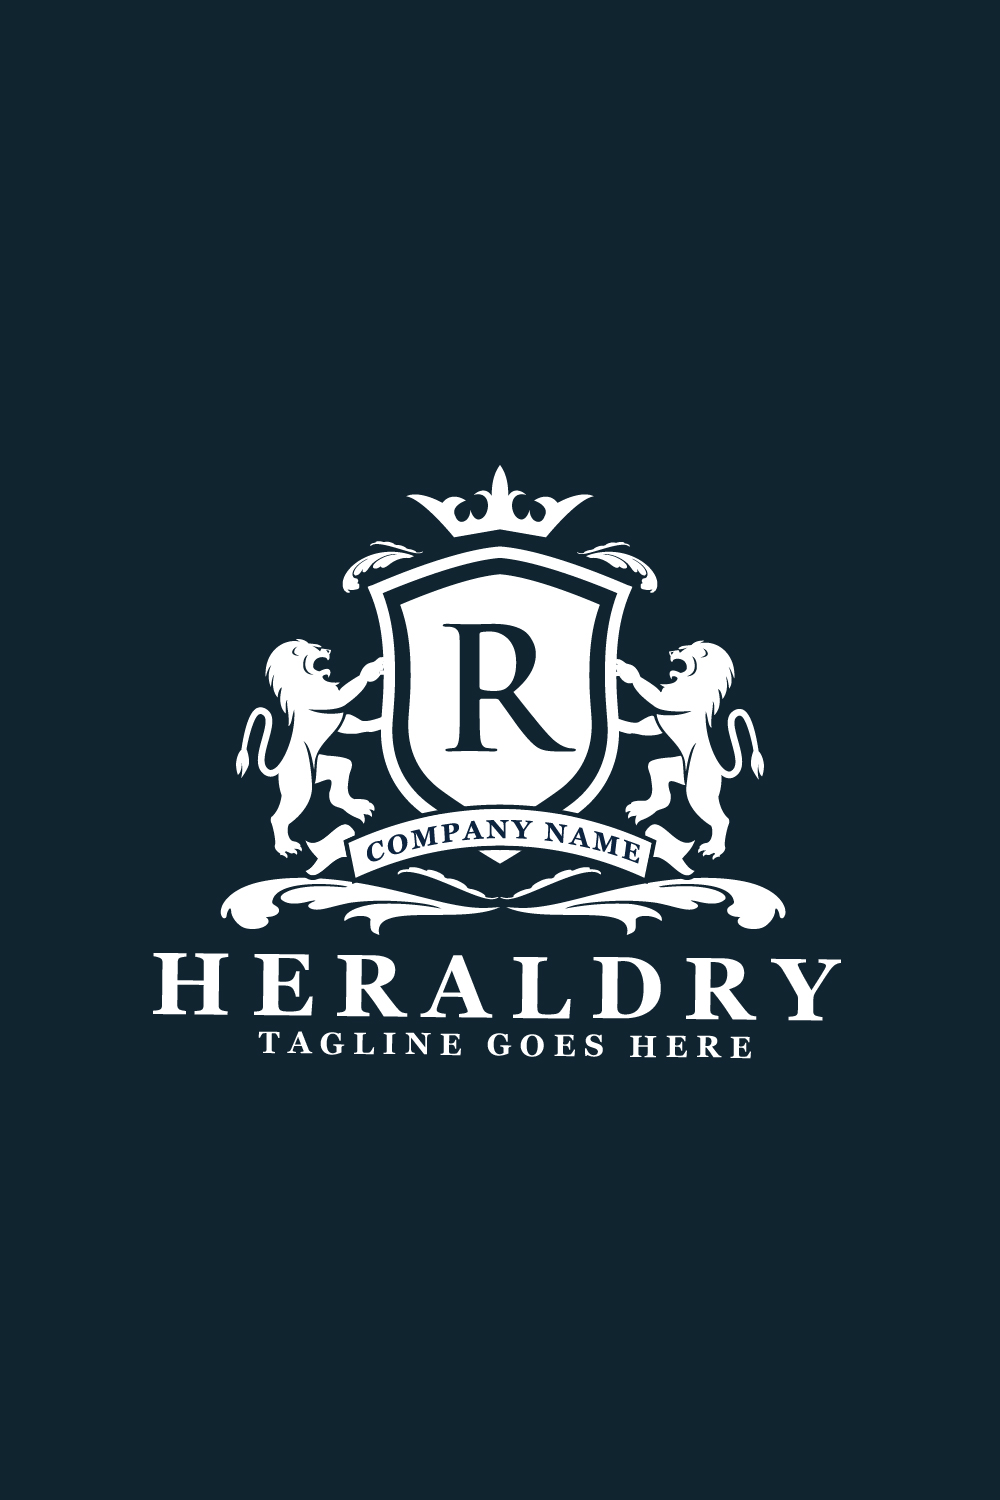 Royal Lion Heraldic Logos pinterest preview image.